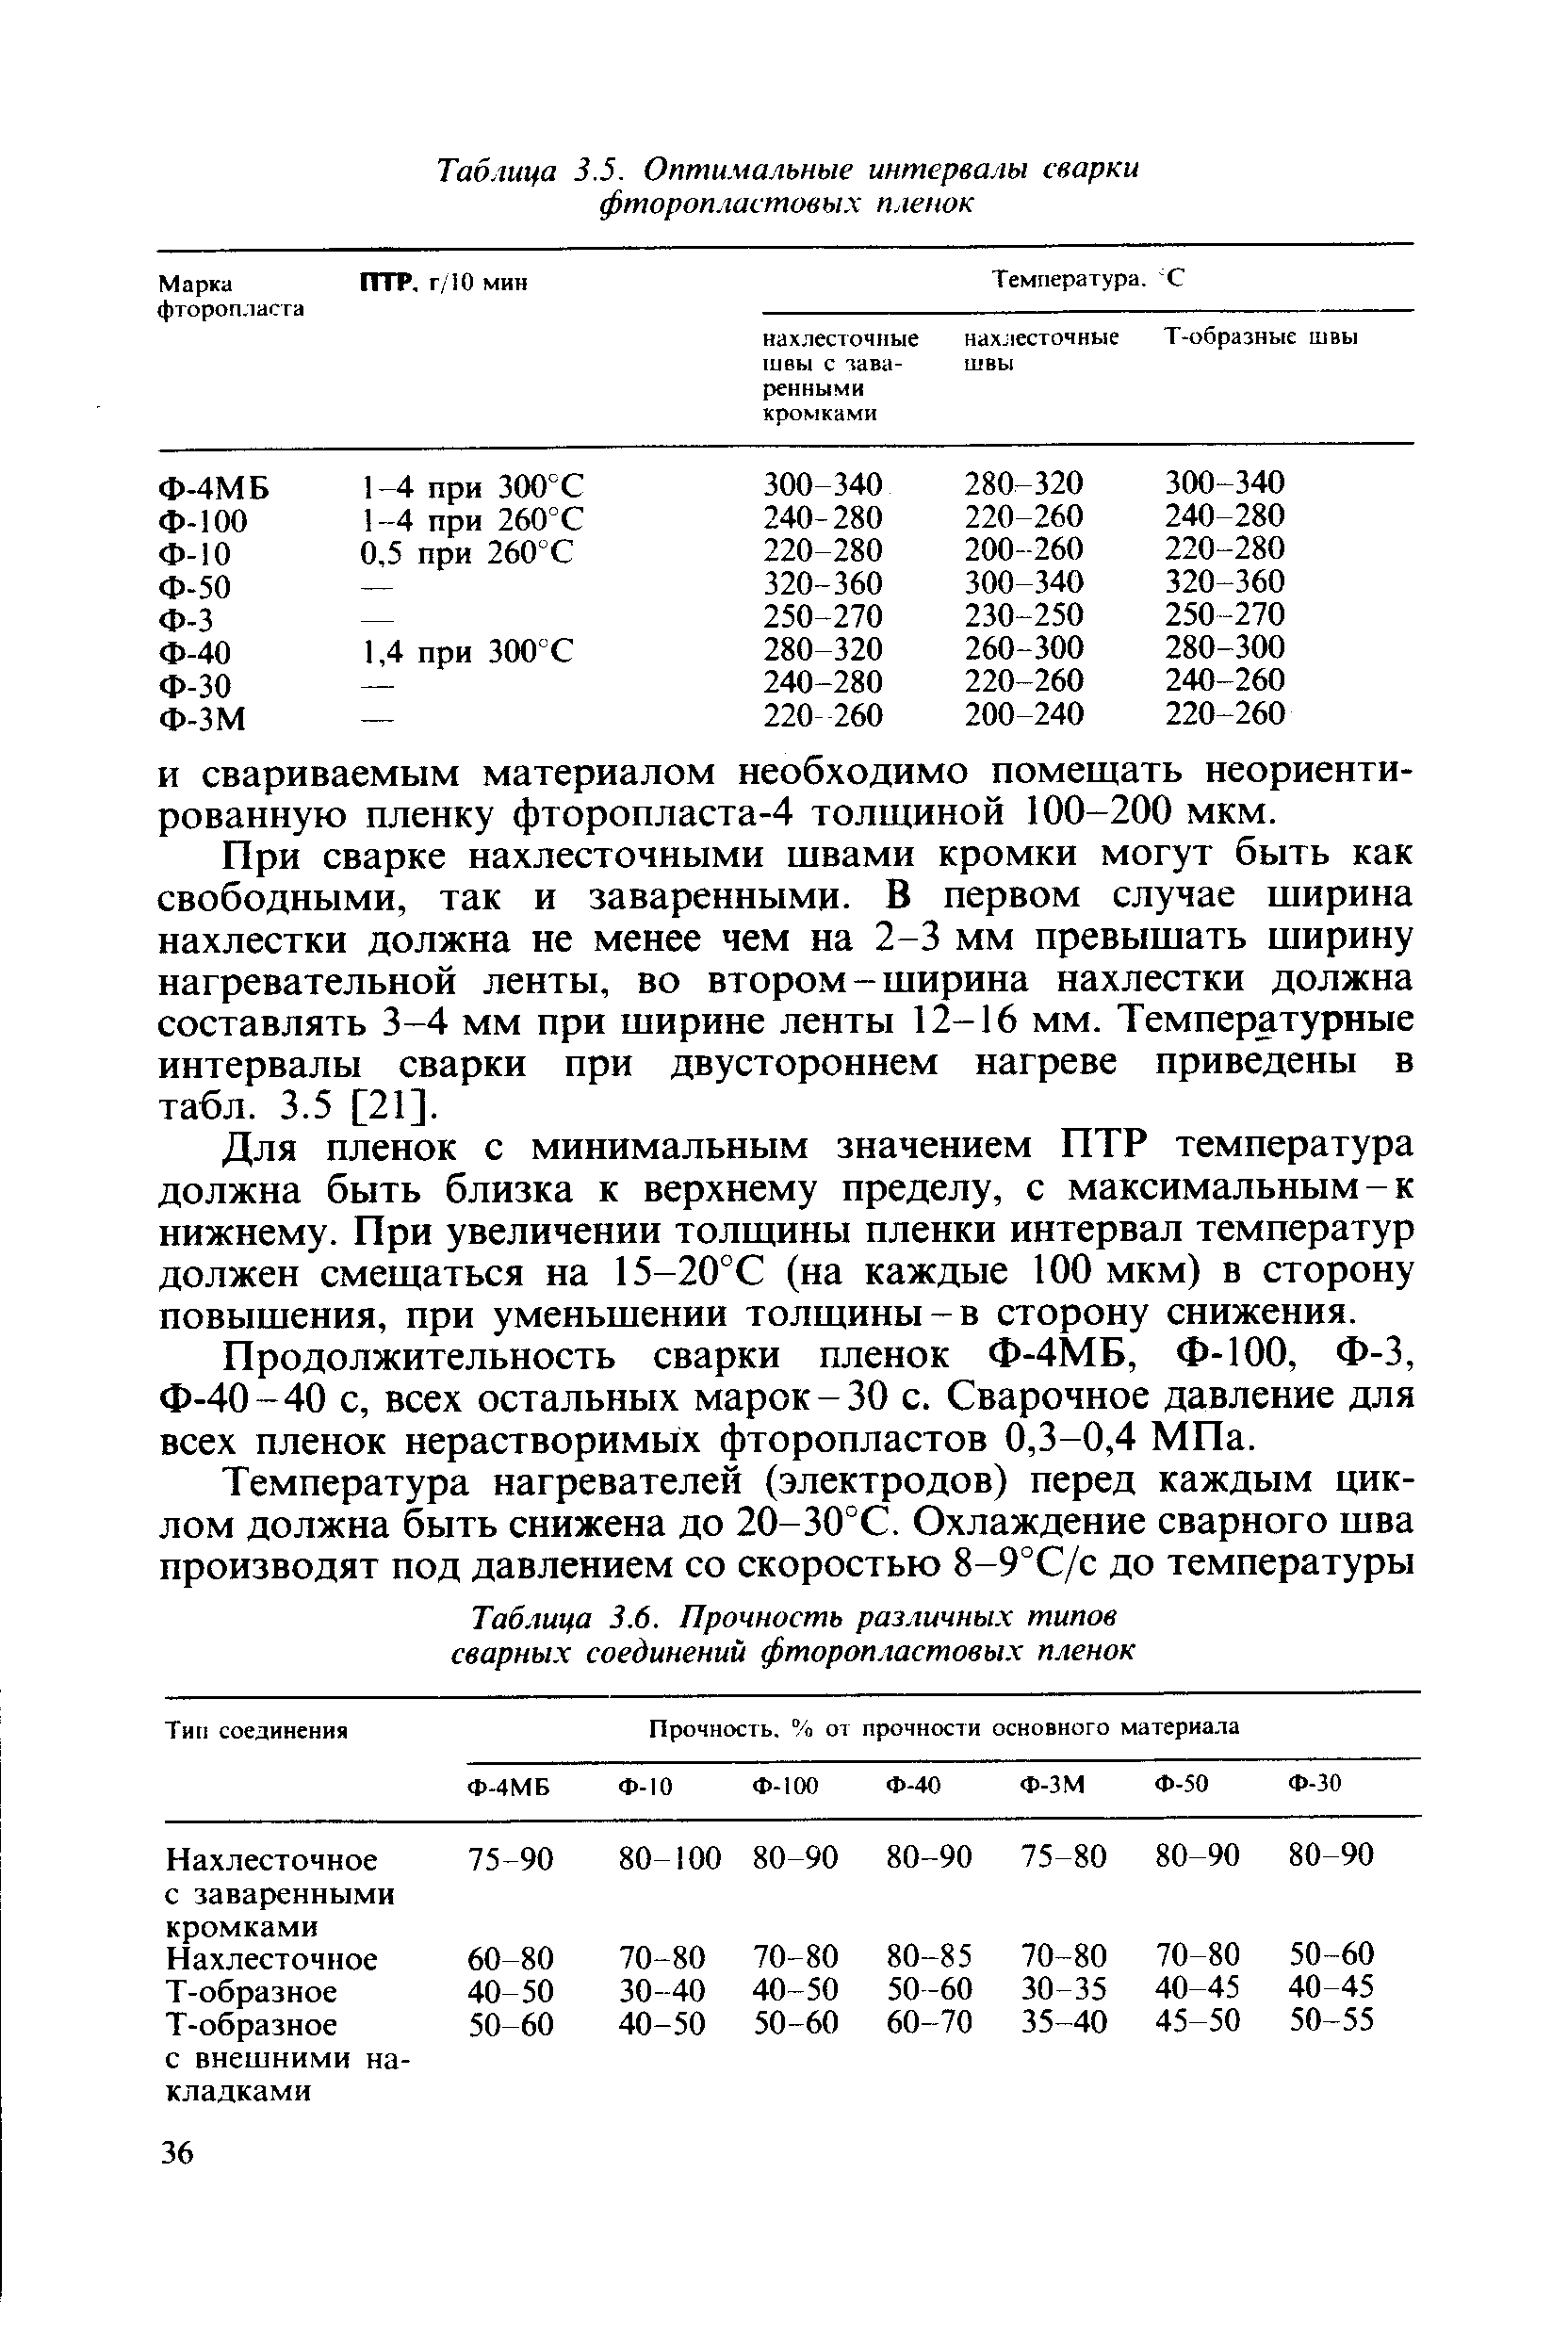 Таблица 3.6. Прочность различных типов сварных соединений фтороп.шстовых пленок
